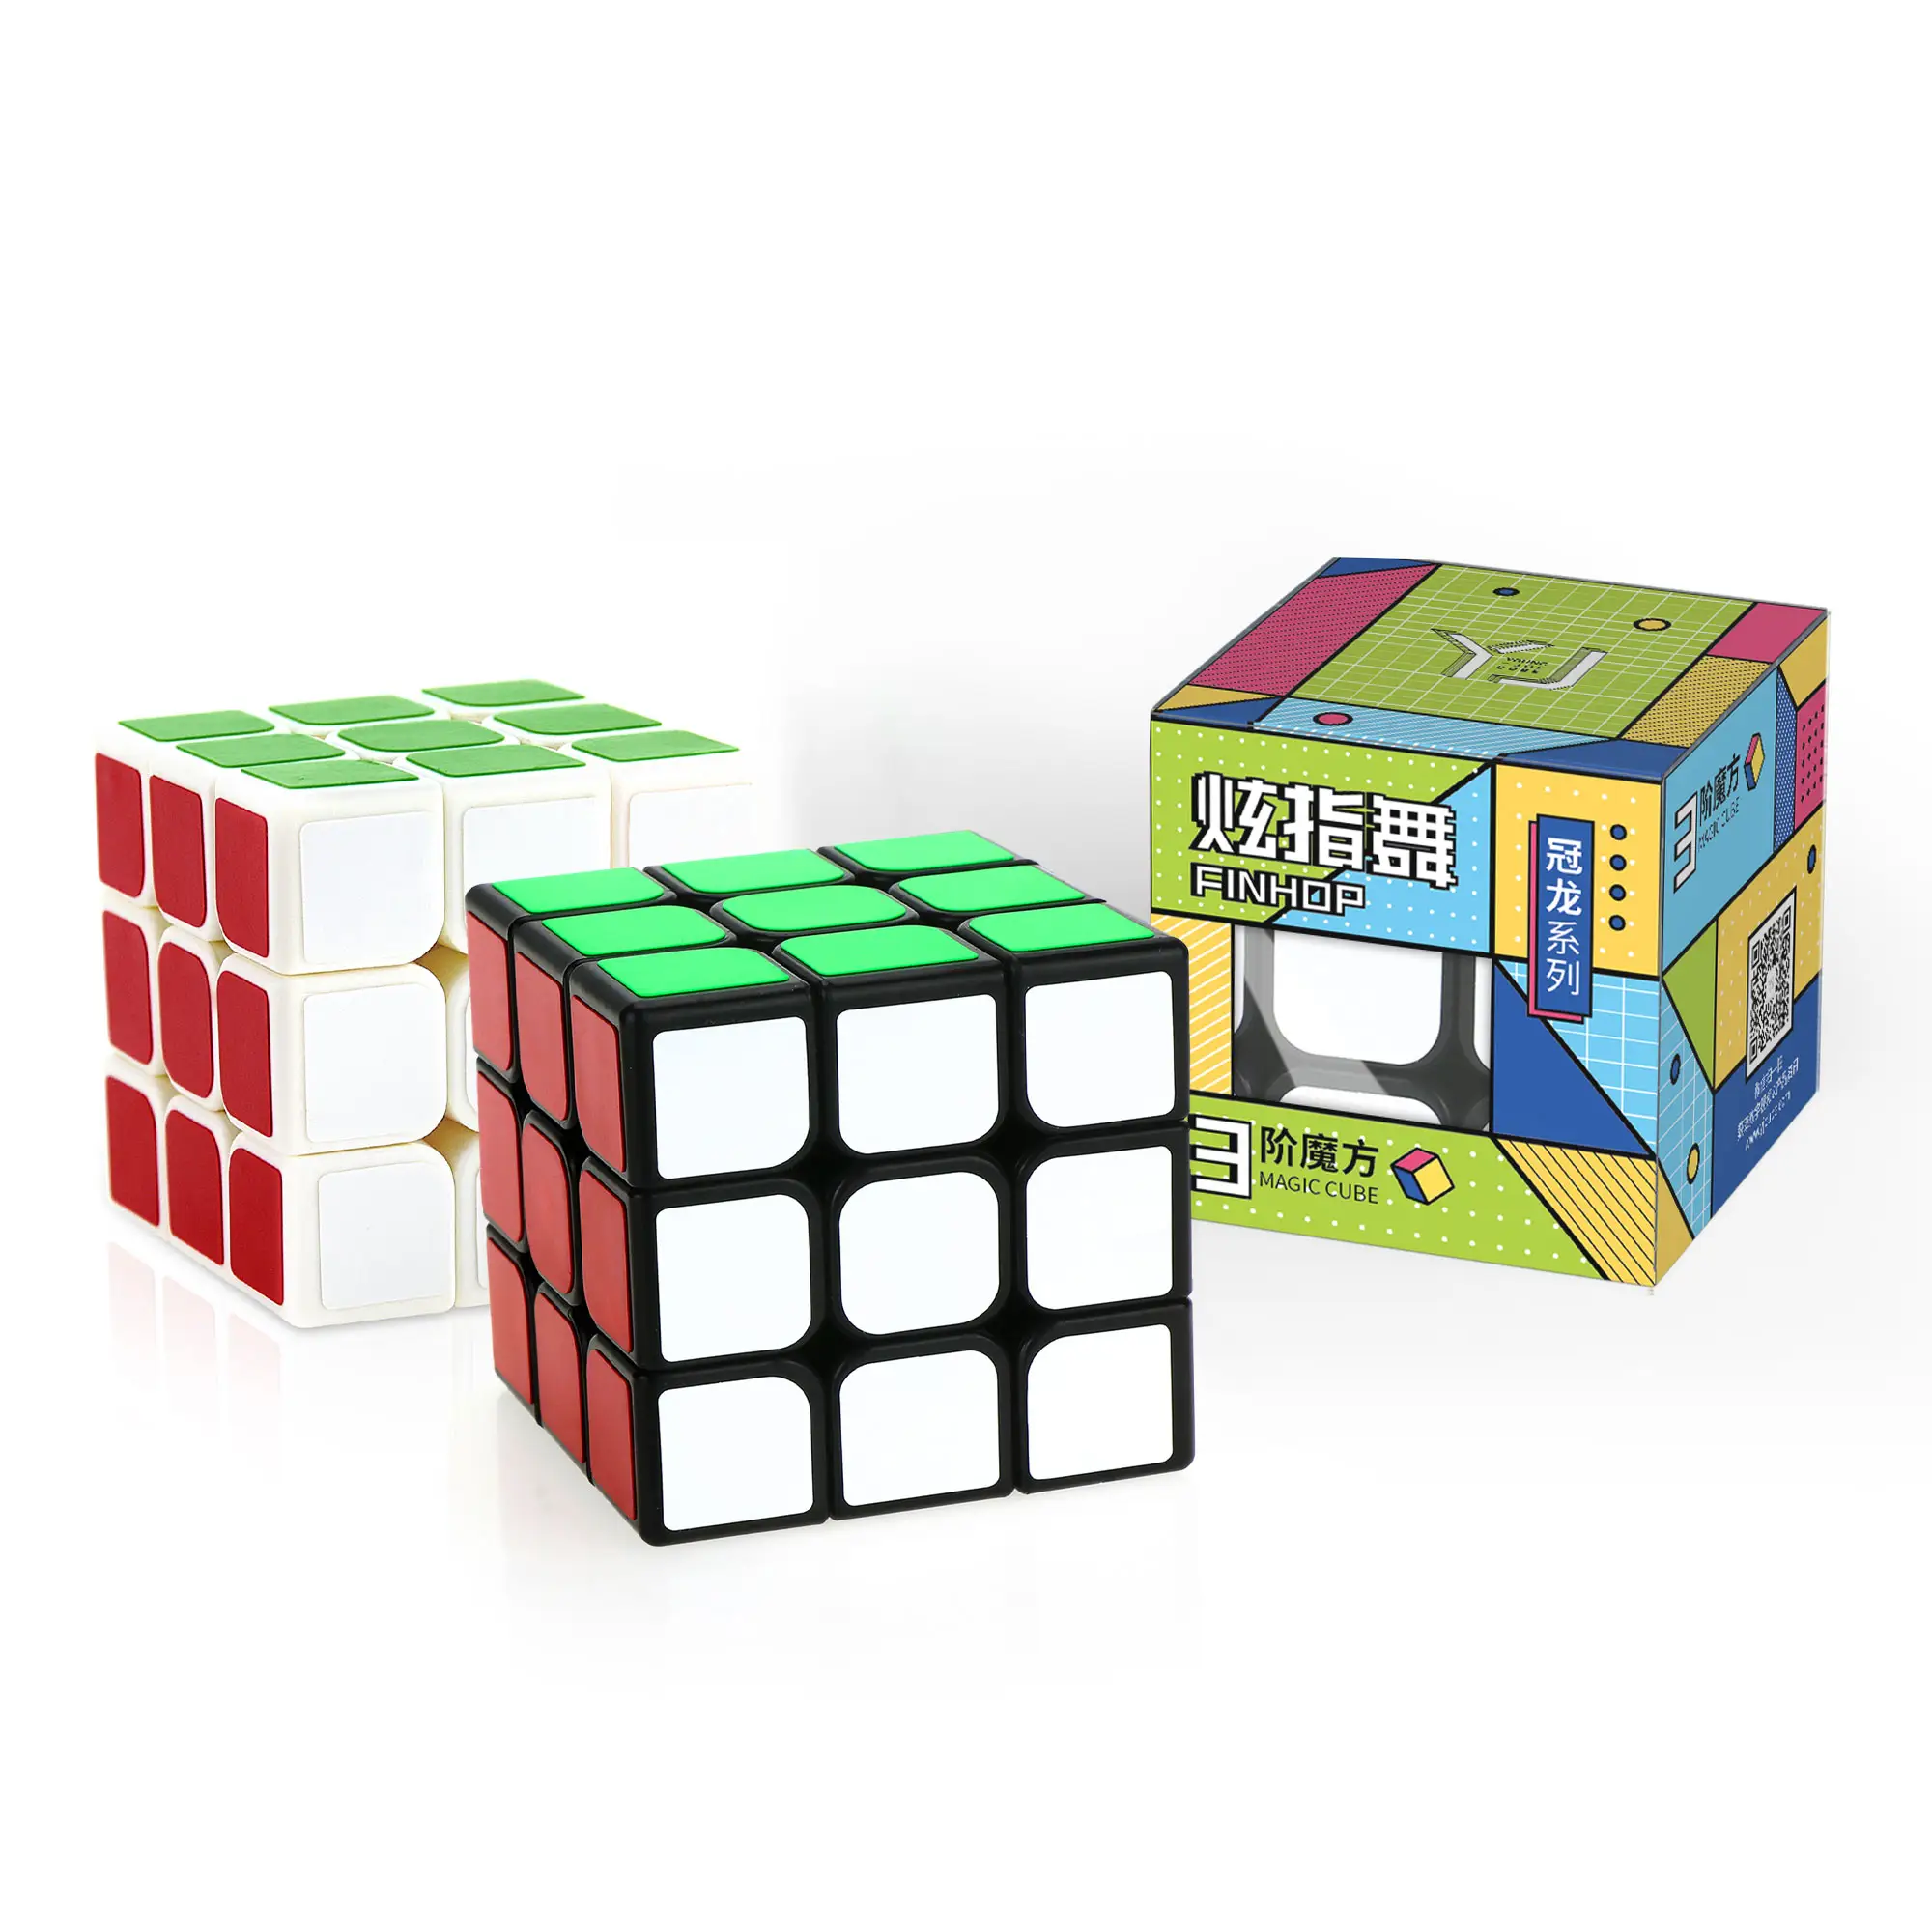 YJ 용준-관롱 V3 매직 3x3x3 뜨거운 판매 프로모션 교육 퍼즐 장난감 피젯 큐브 3x3